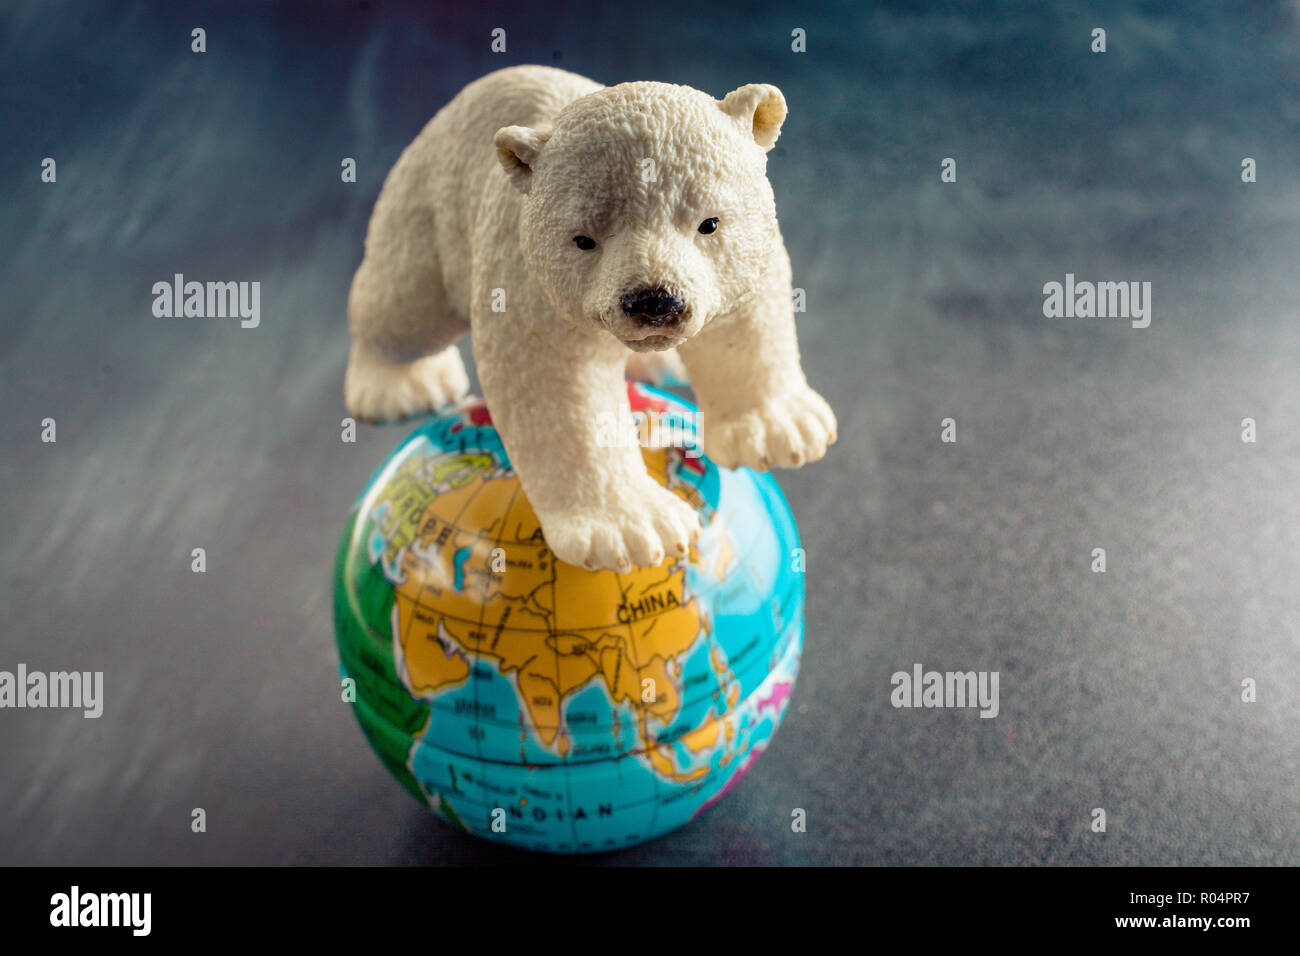 Modèle d'ours polaires et d'un modèle en vue globe Banque D'Images